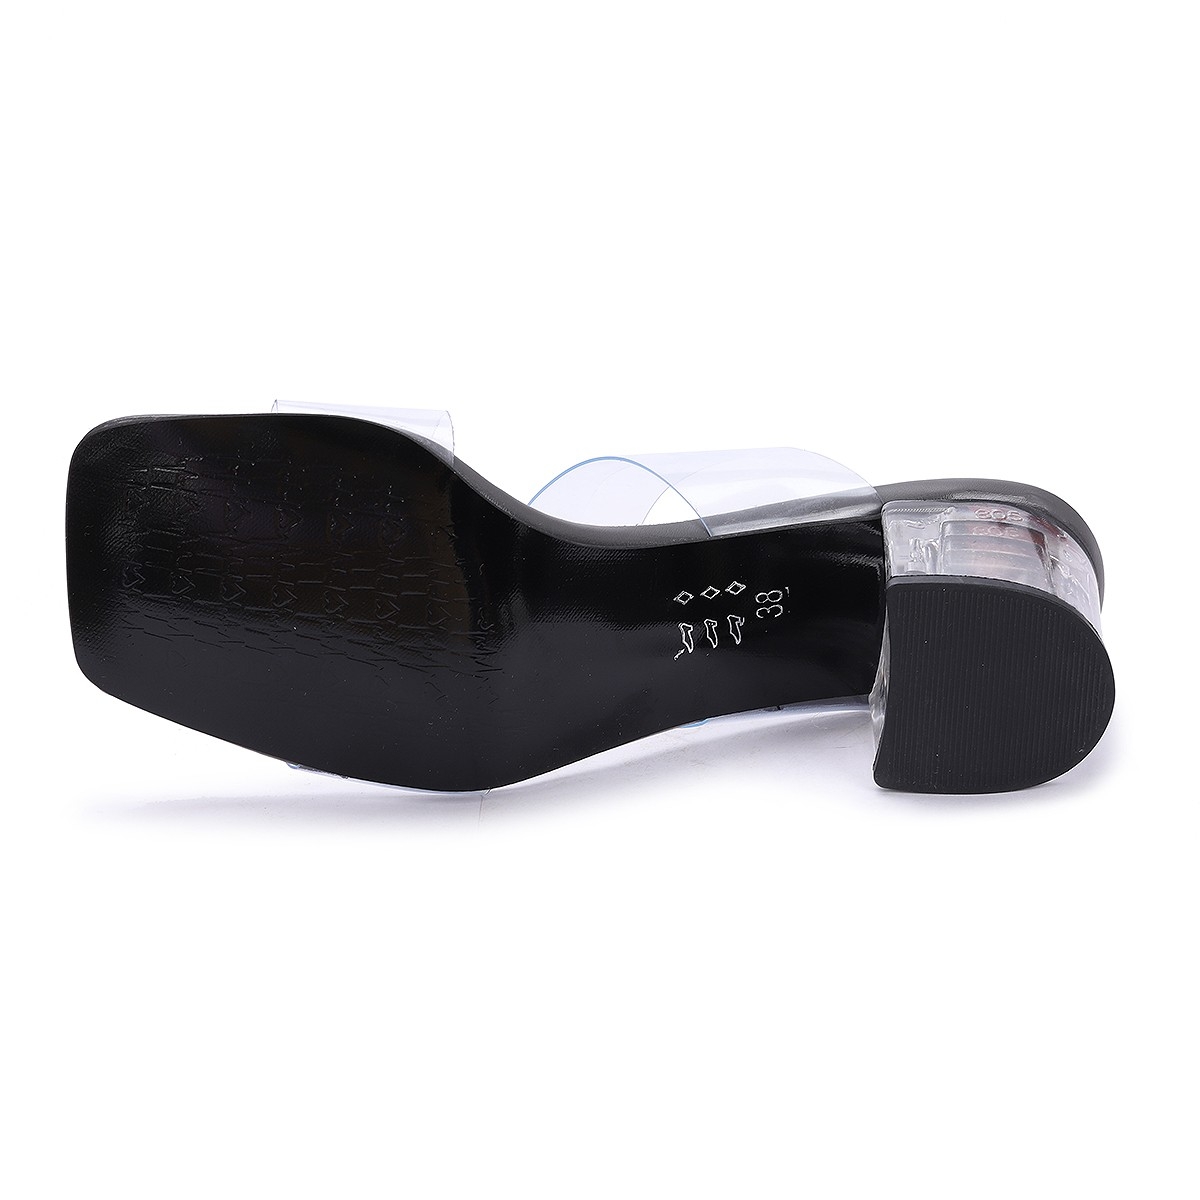 Flo 6470-06 Cilt Şeffaf 7 Cm Topuk Kadın Sandalet Ayakkabı GRİ. 3